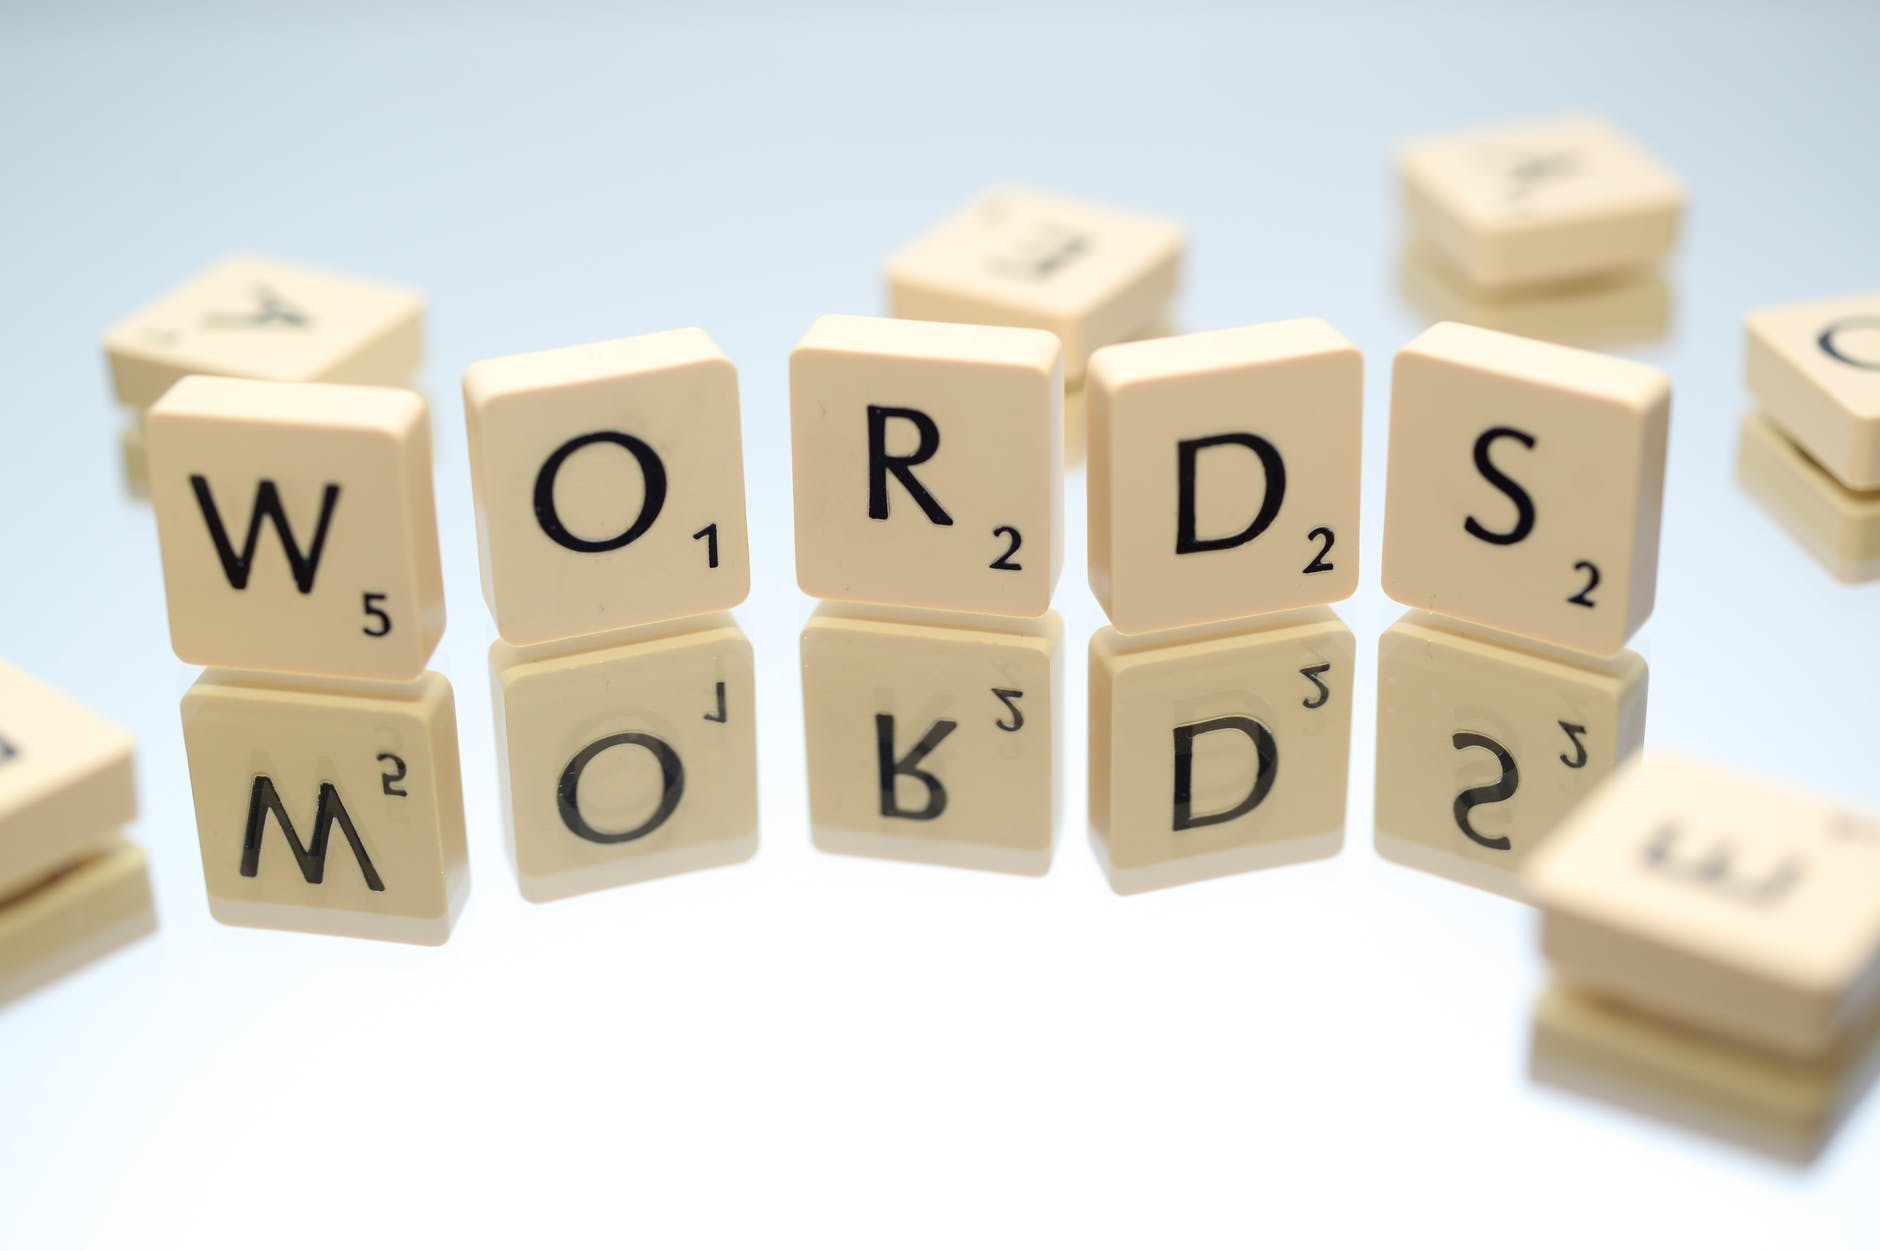 Scrabble pieces - words - keywords